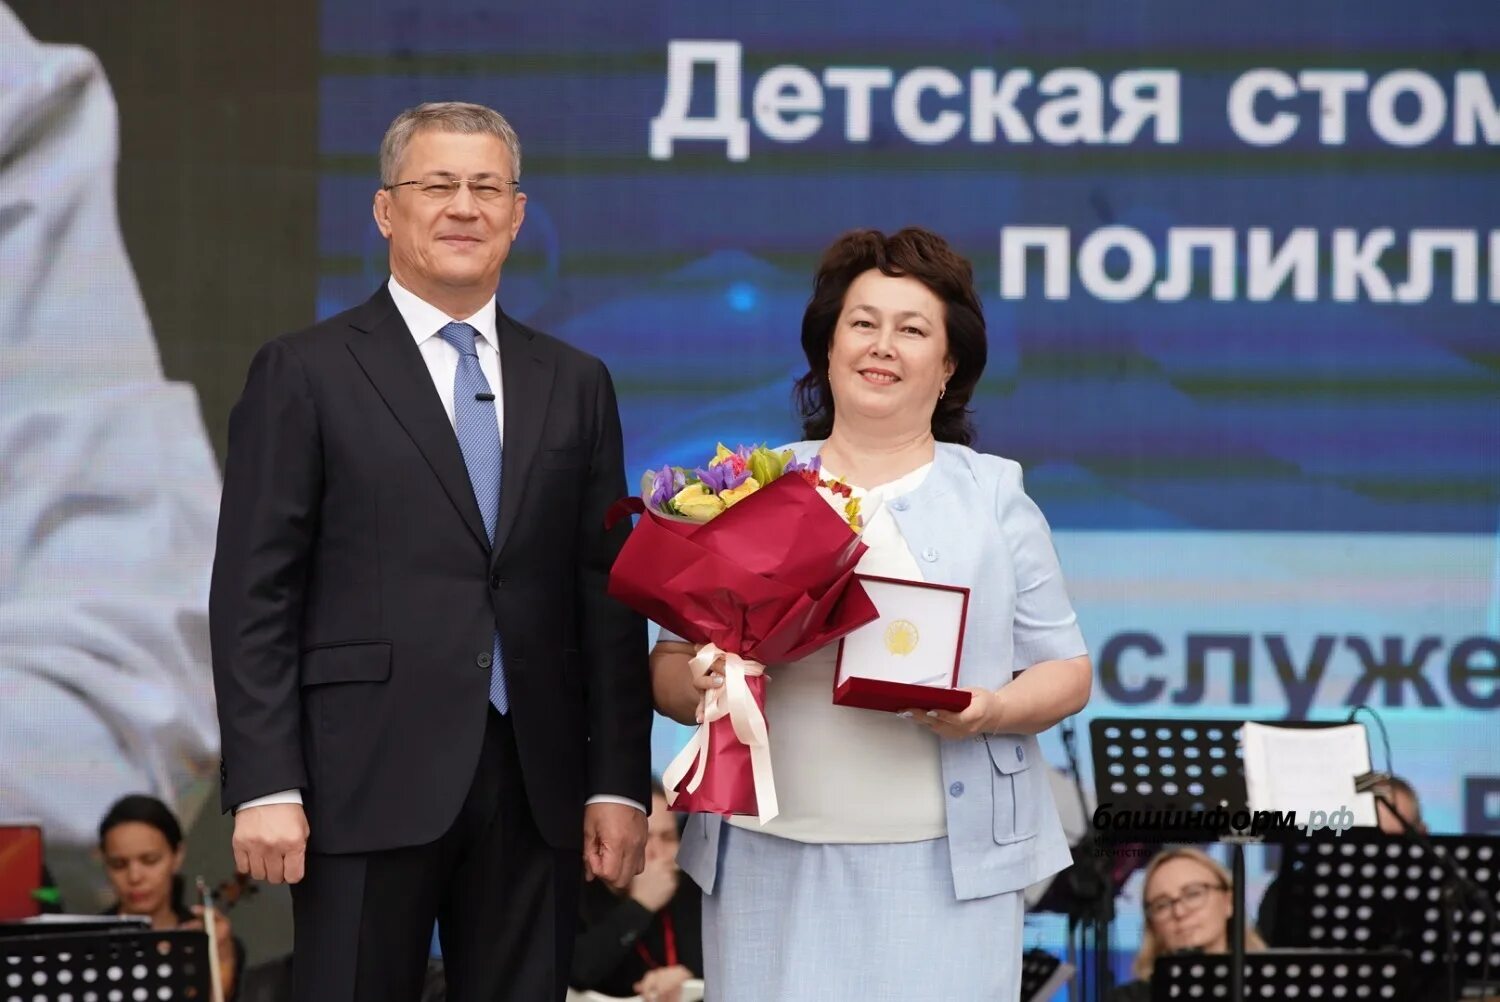 Радий Хабиров наградил медиков. Хабиров наградил семью. Радий Хабиров соцсети фото. Хабиров с супругой фото.